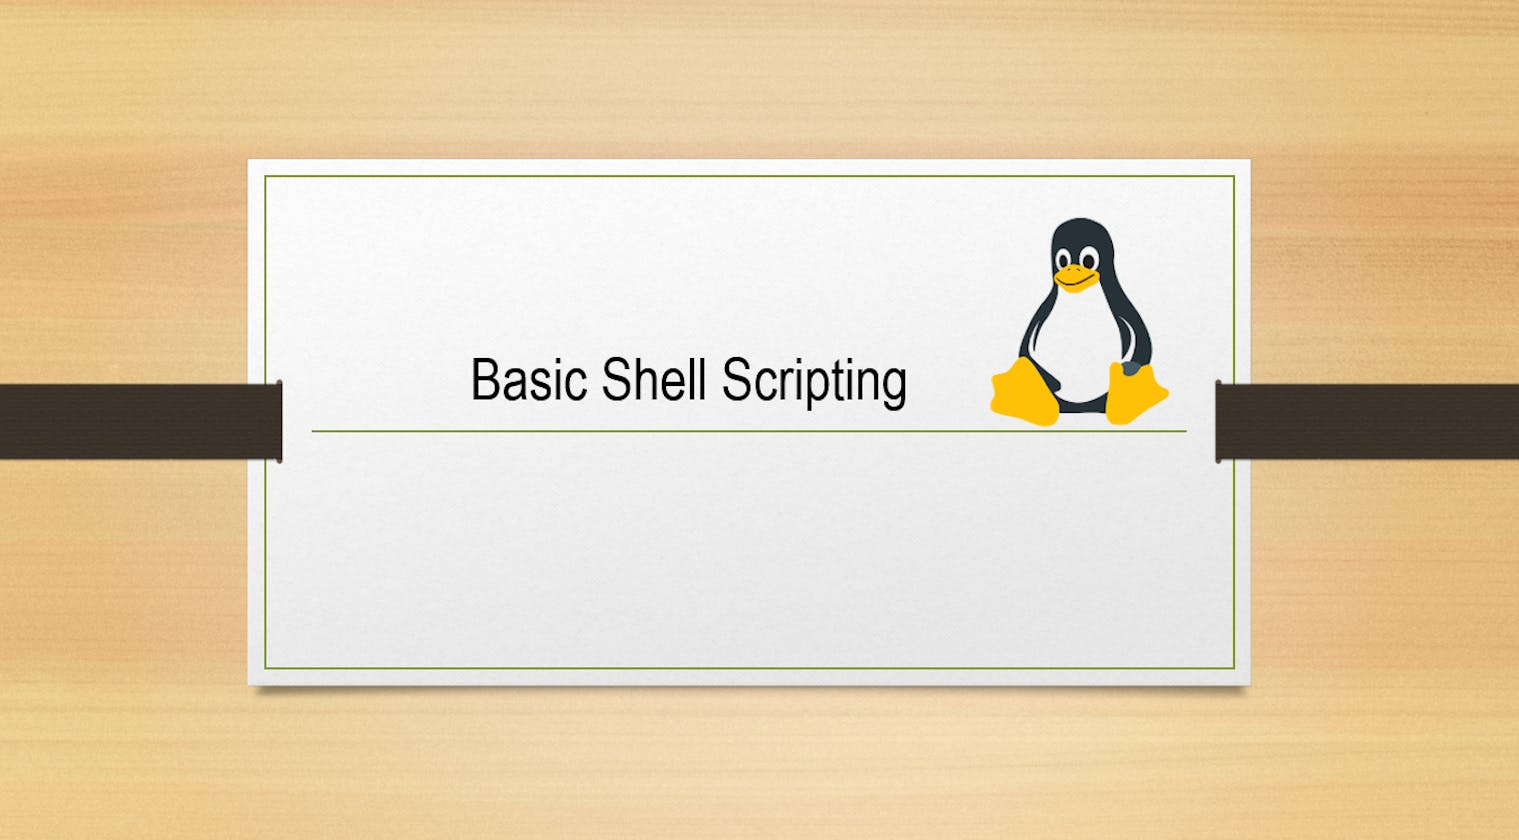 Basic Shell Scripting